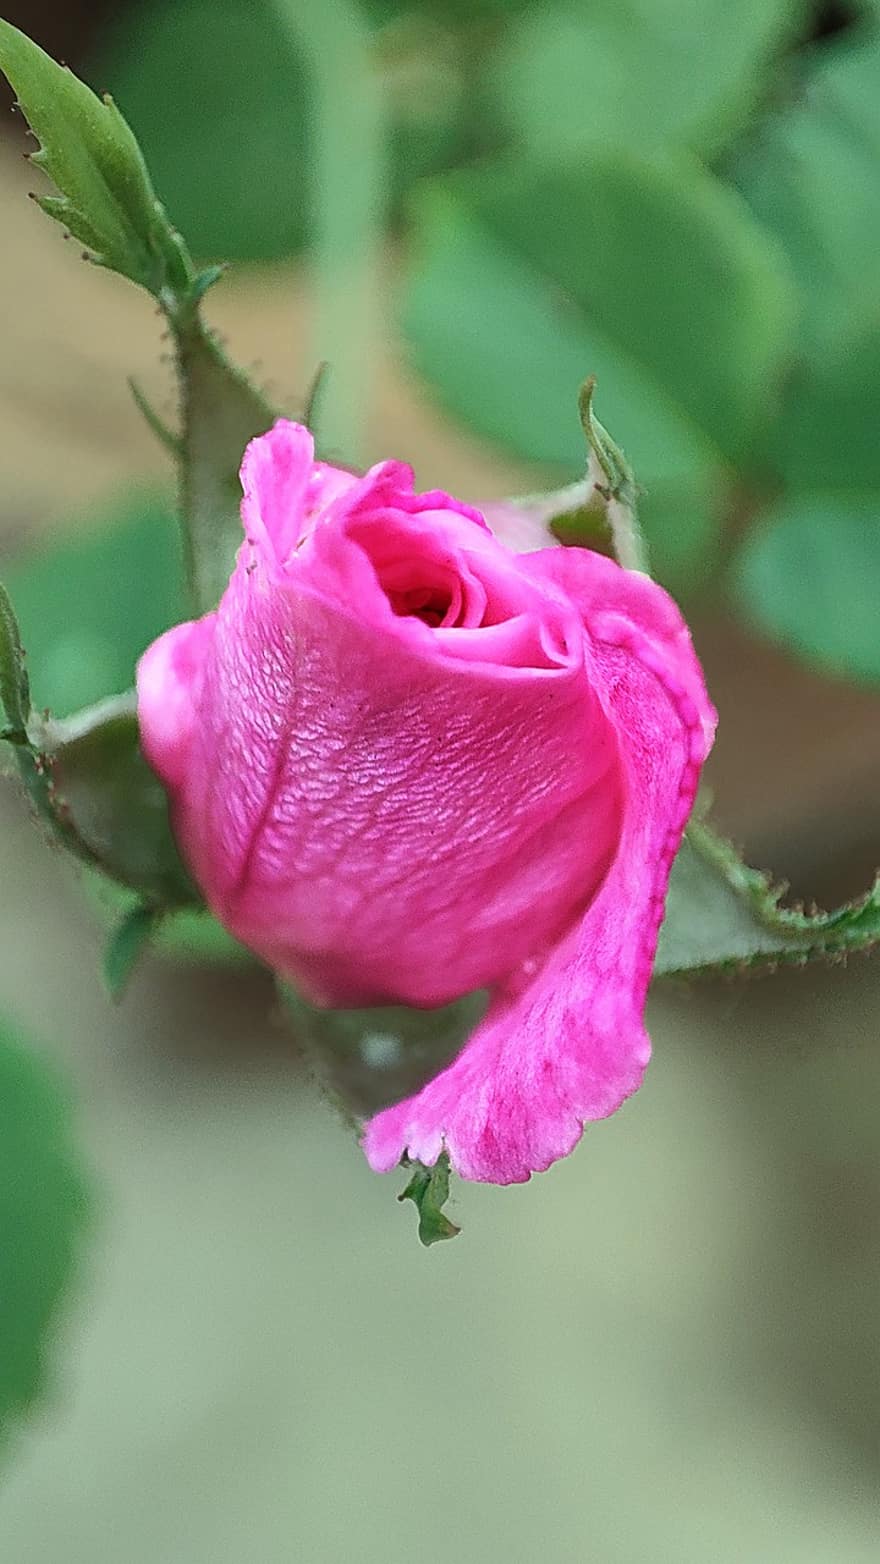 Pink Rose, Rose, Pink Flower, Garden, Nature, Rose Bud, close-up, petal, leaf, plant, flower